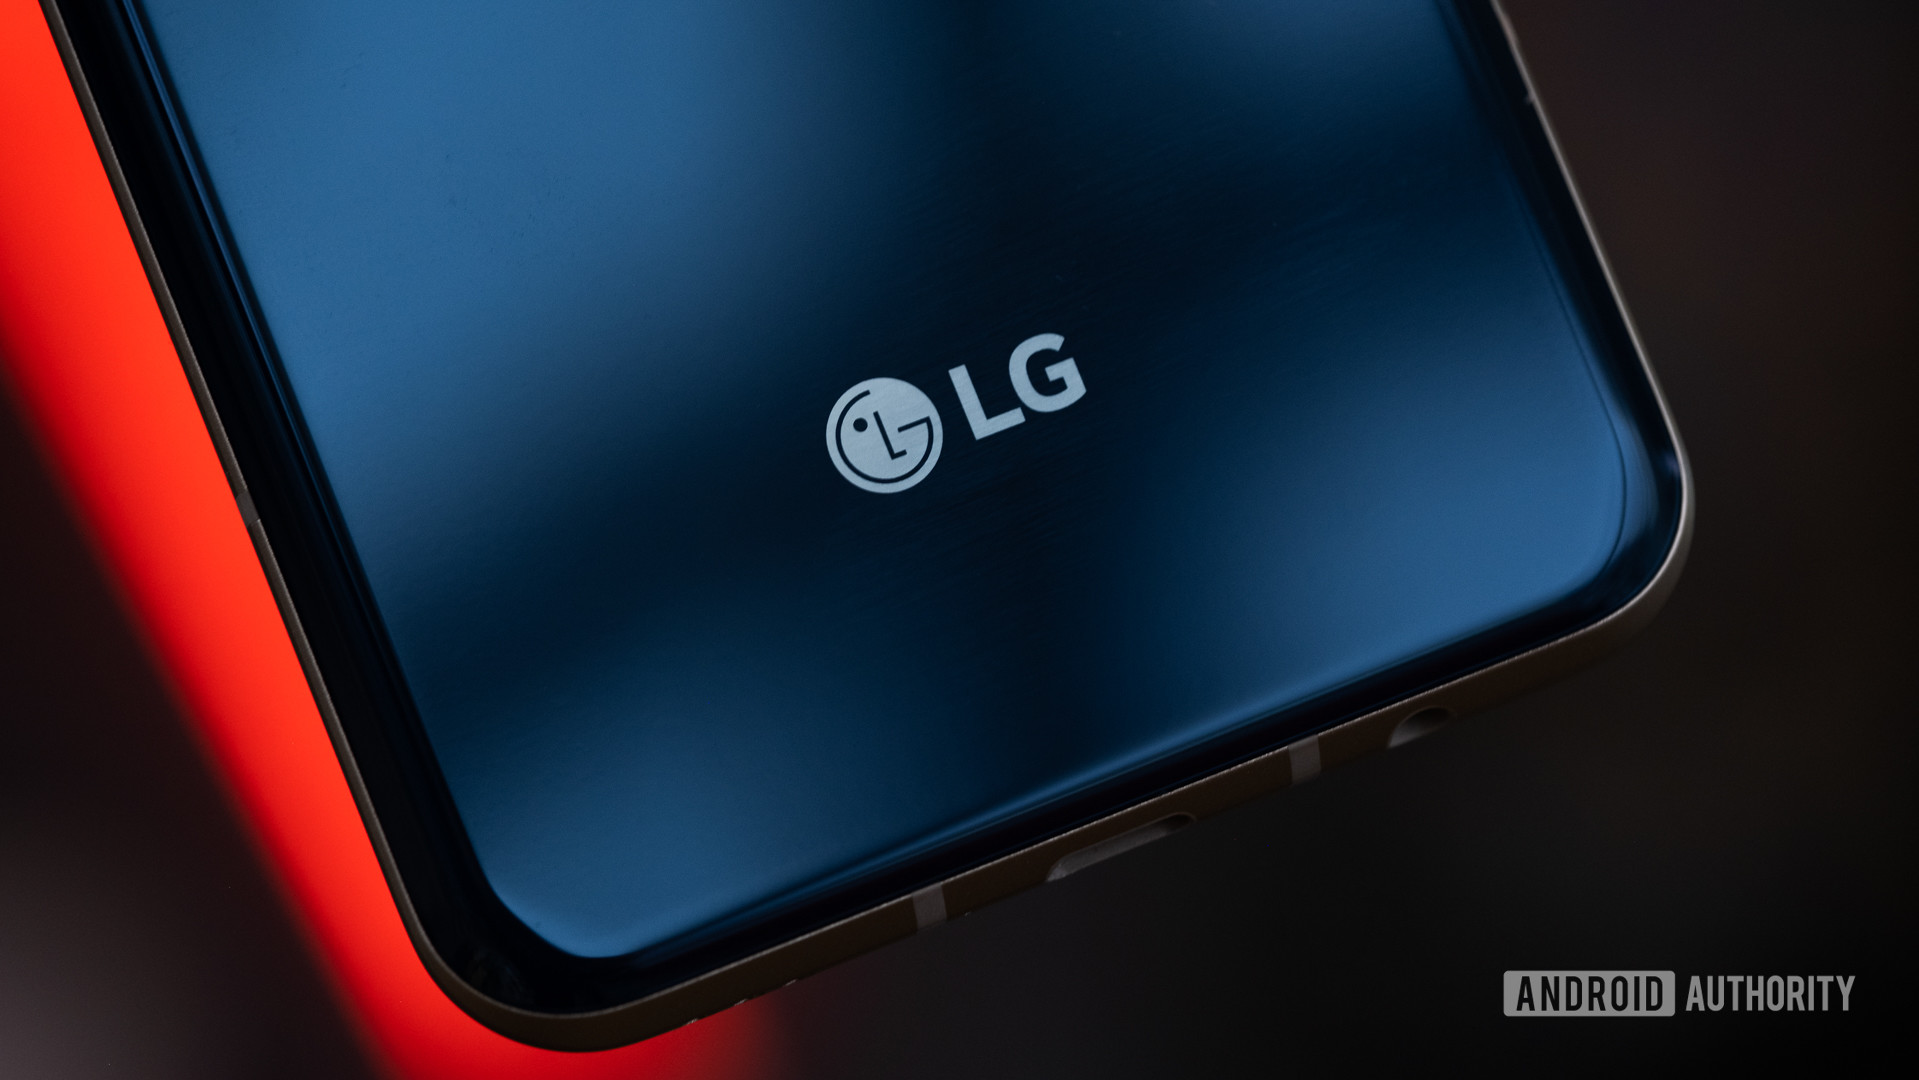 LG Display сообщили о первой прибыли за последние 7 кварталов благодаря удаленной работе